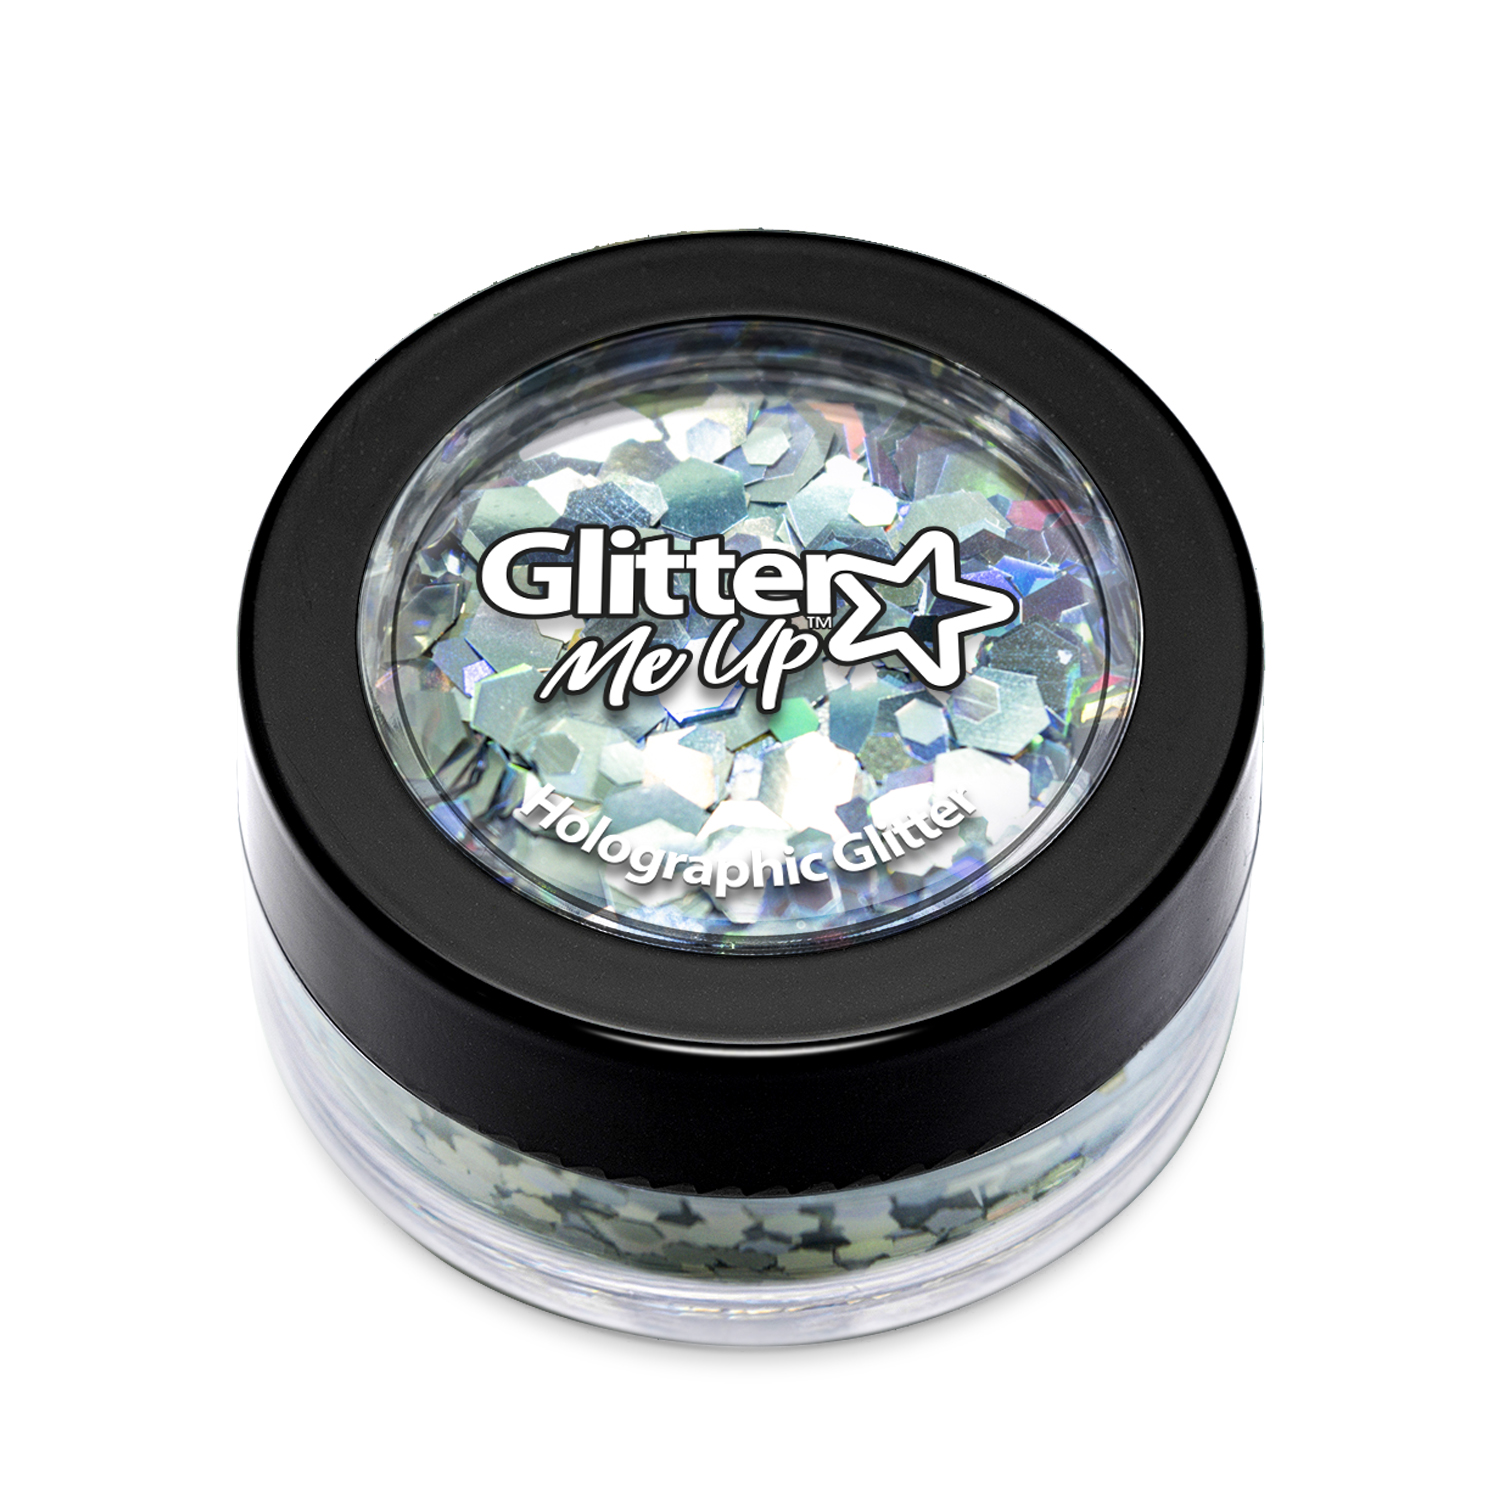 Glitter holographic, multicolor